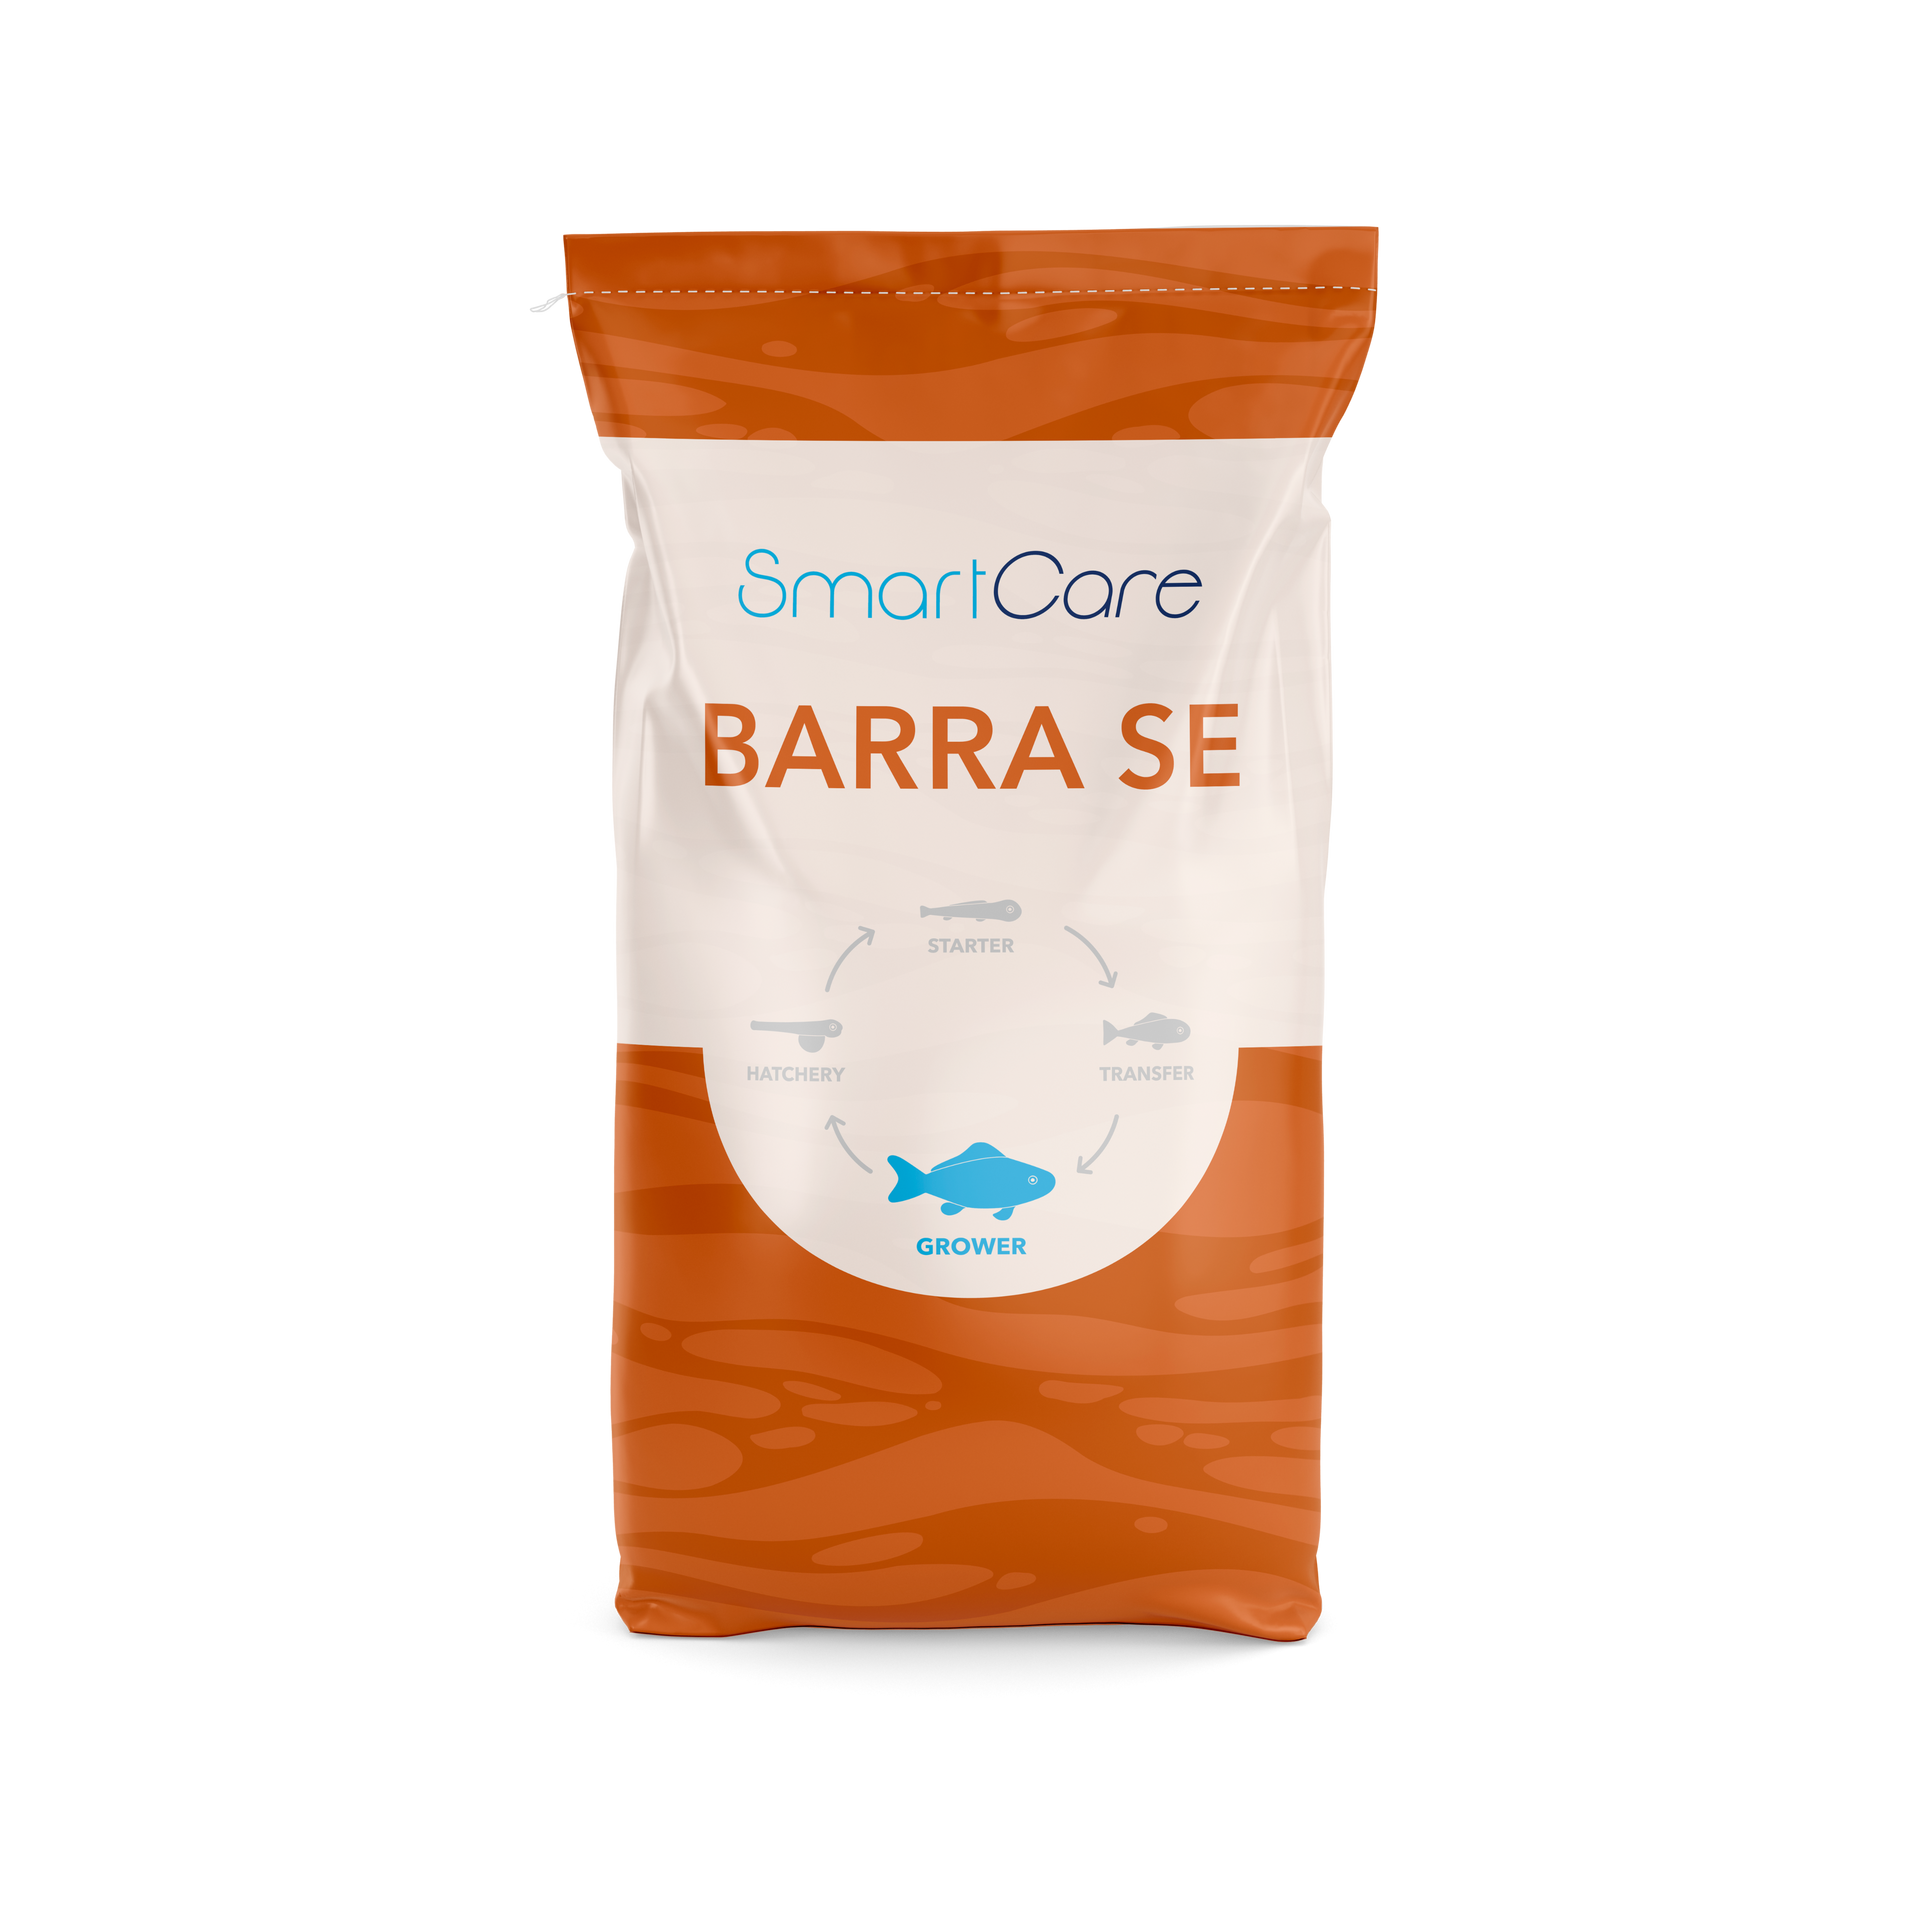 SmartCare Barra SE health feed for Barramundi